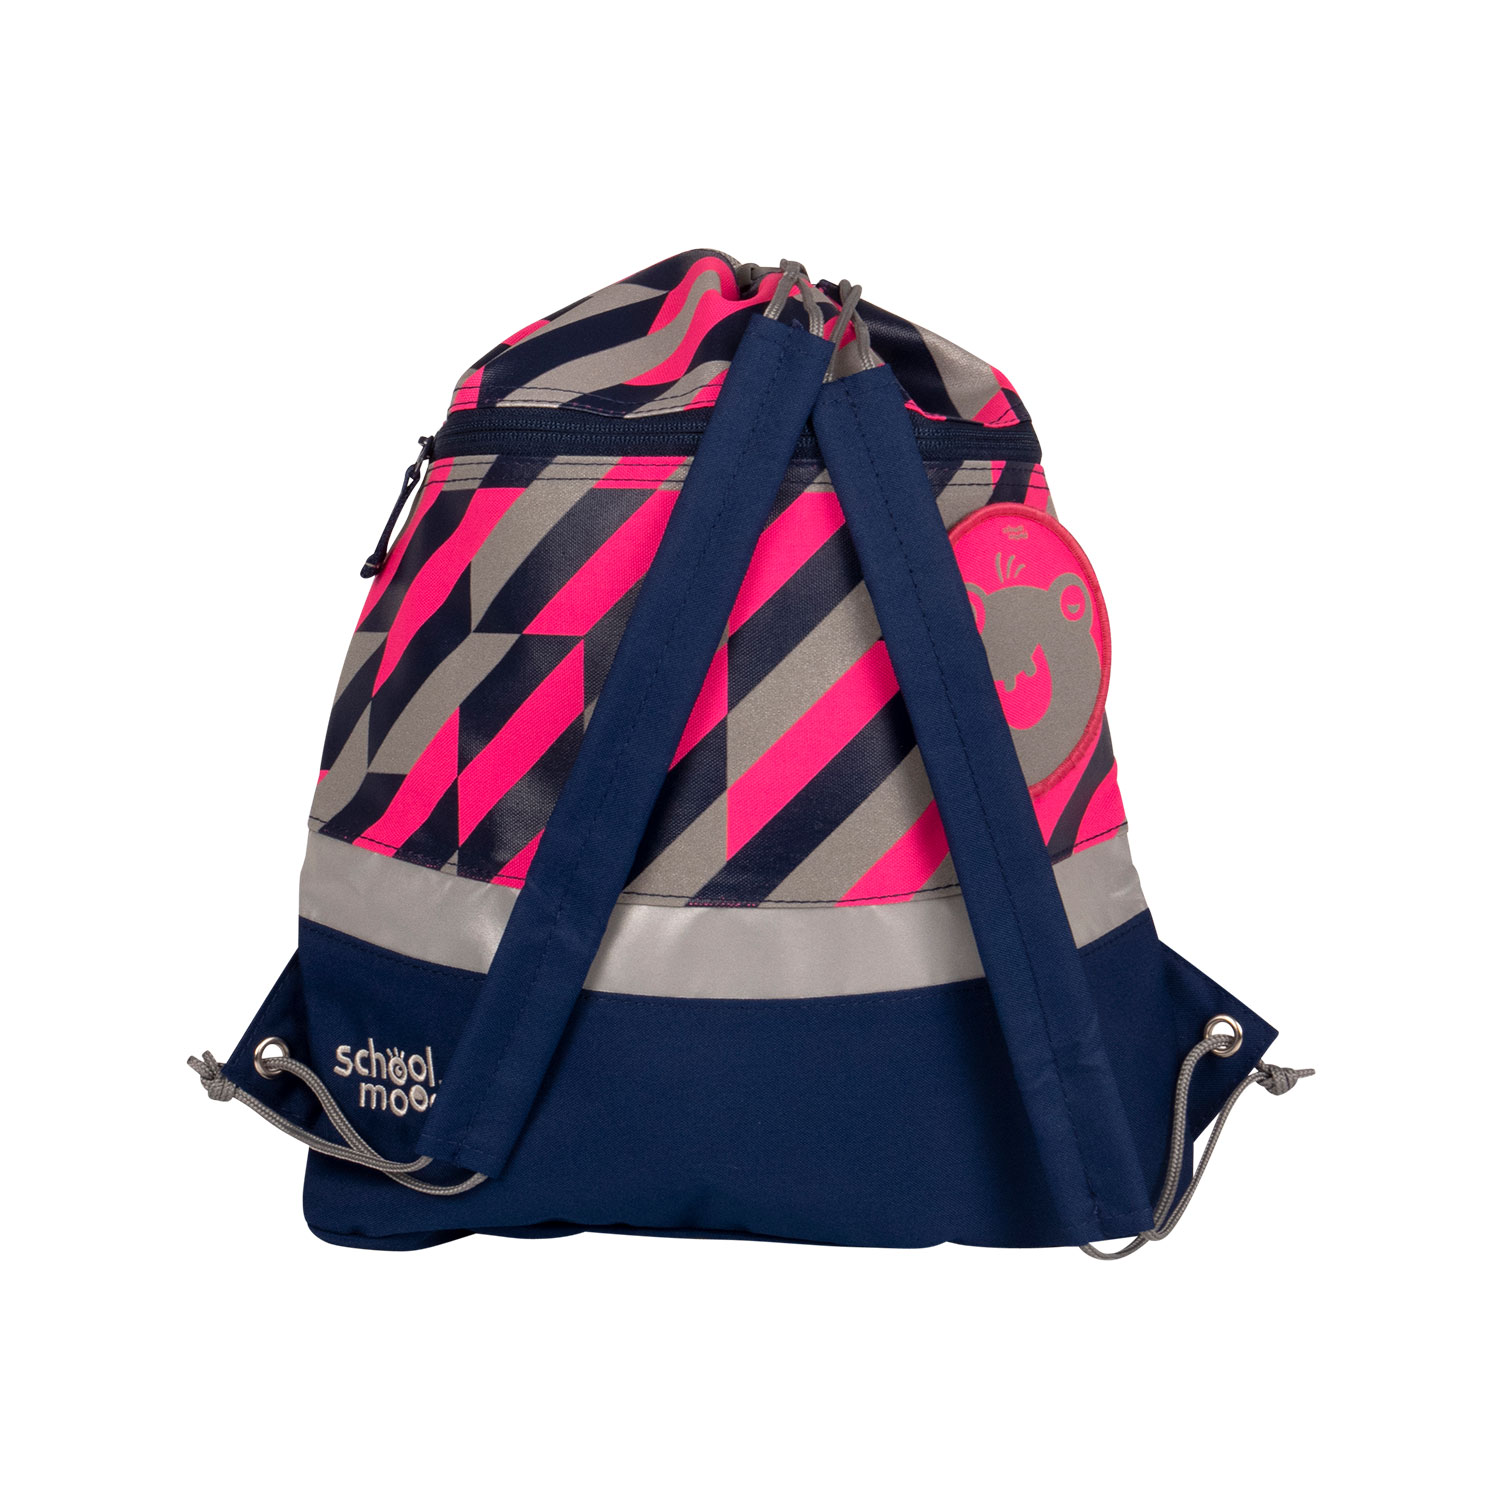 Sporttasche in blau und pink